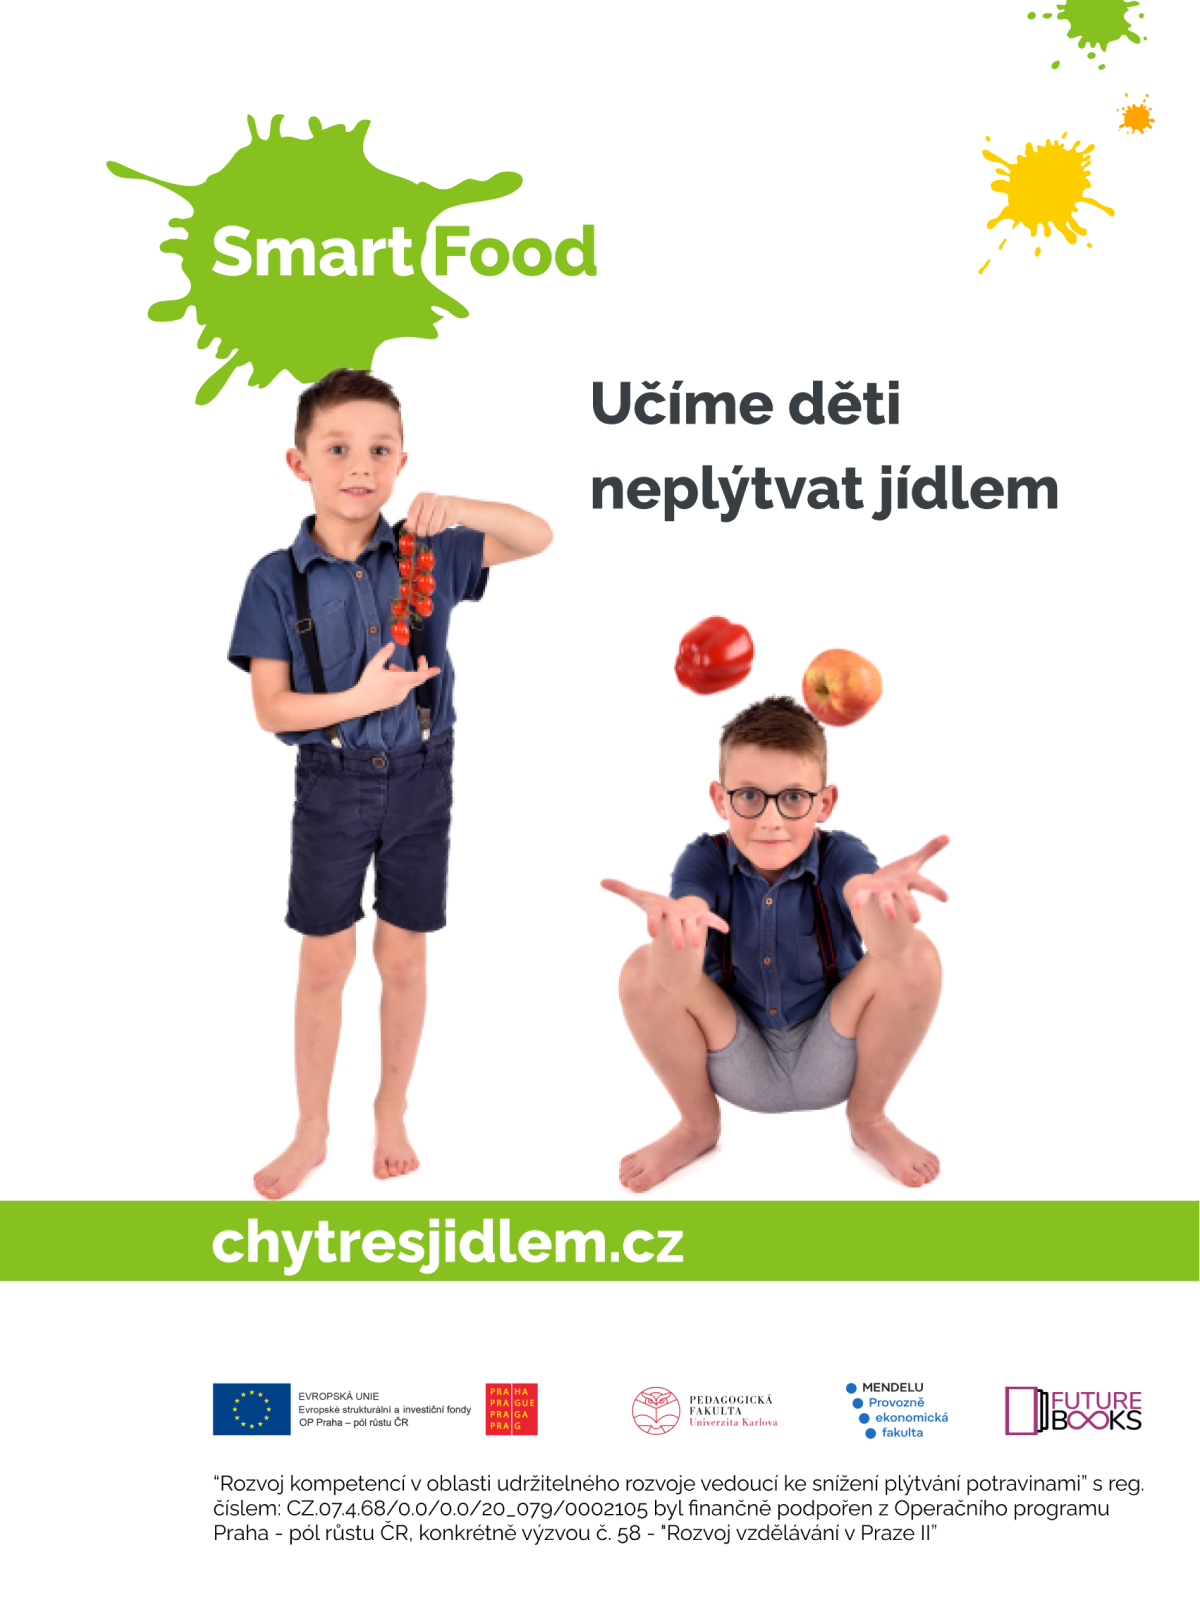 Vzdělávací projekt Smart Food | Chytresjidlem.cz